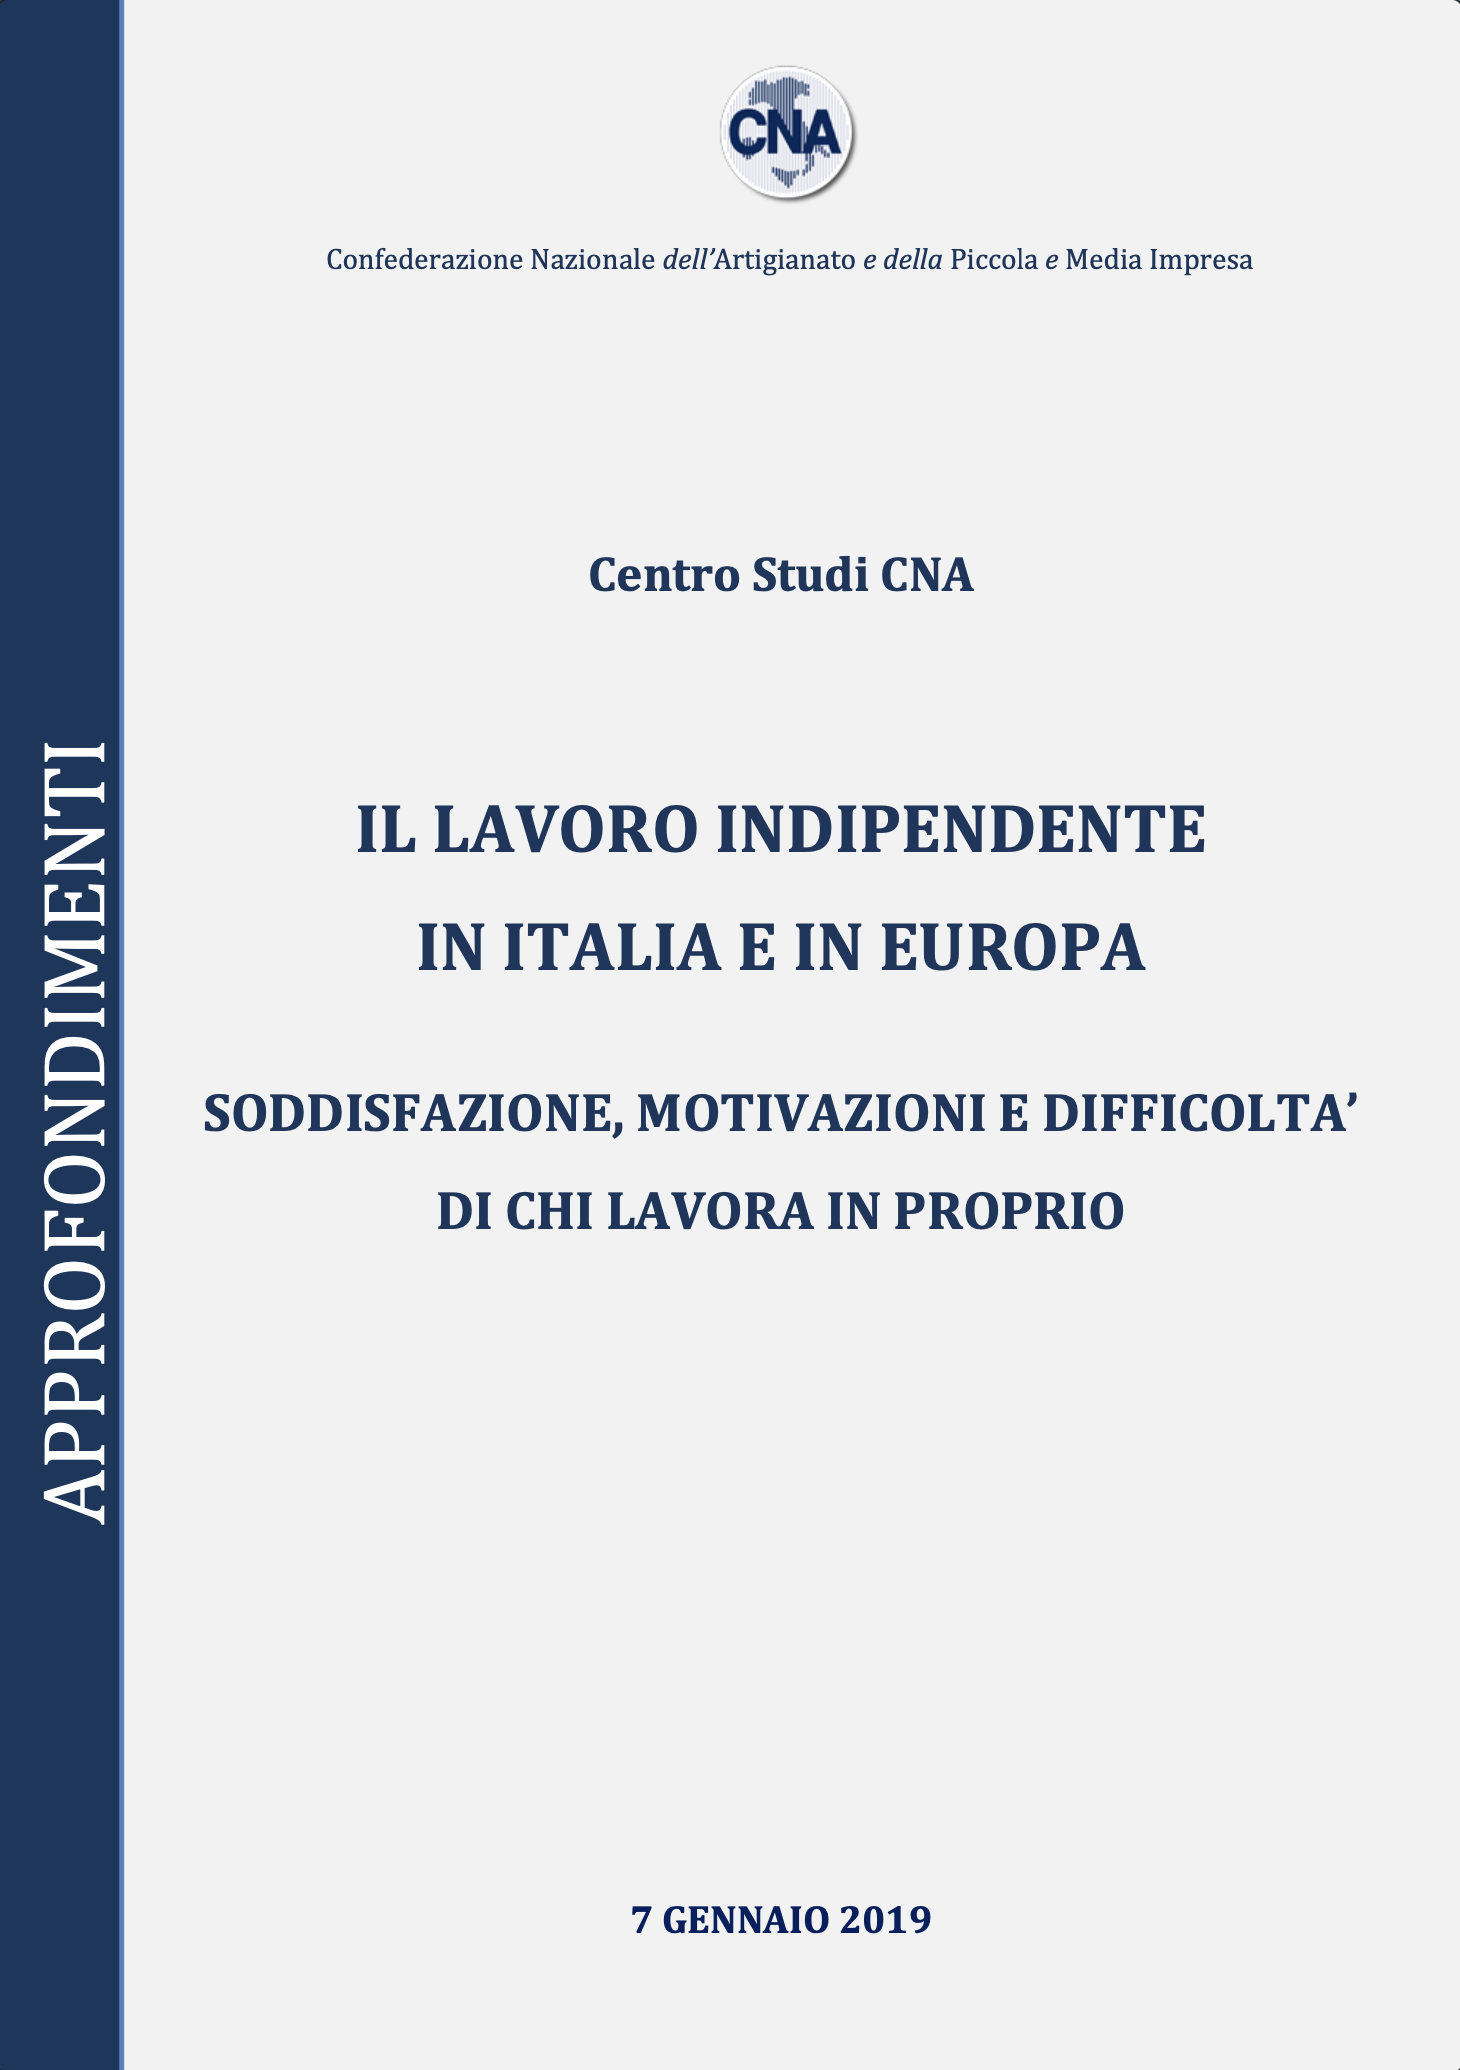 IL LAVORO INDIPENDENTE IN ITALIA E IN EUROPA. SODDISFAZIONE, MOTIVAZIONI E DIFFICOLTÀ DI CHI LAVORA IN PROPRIO